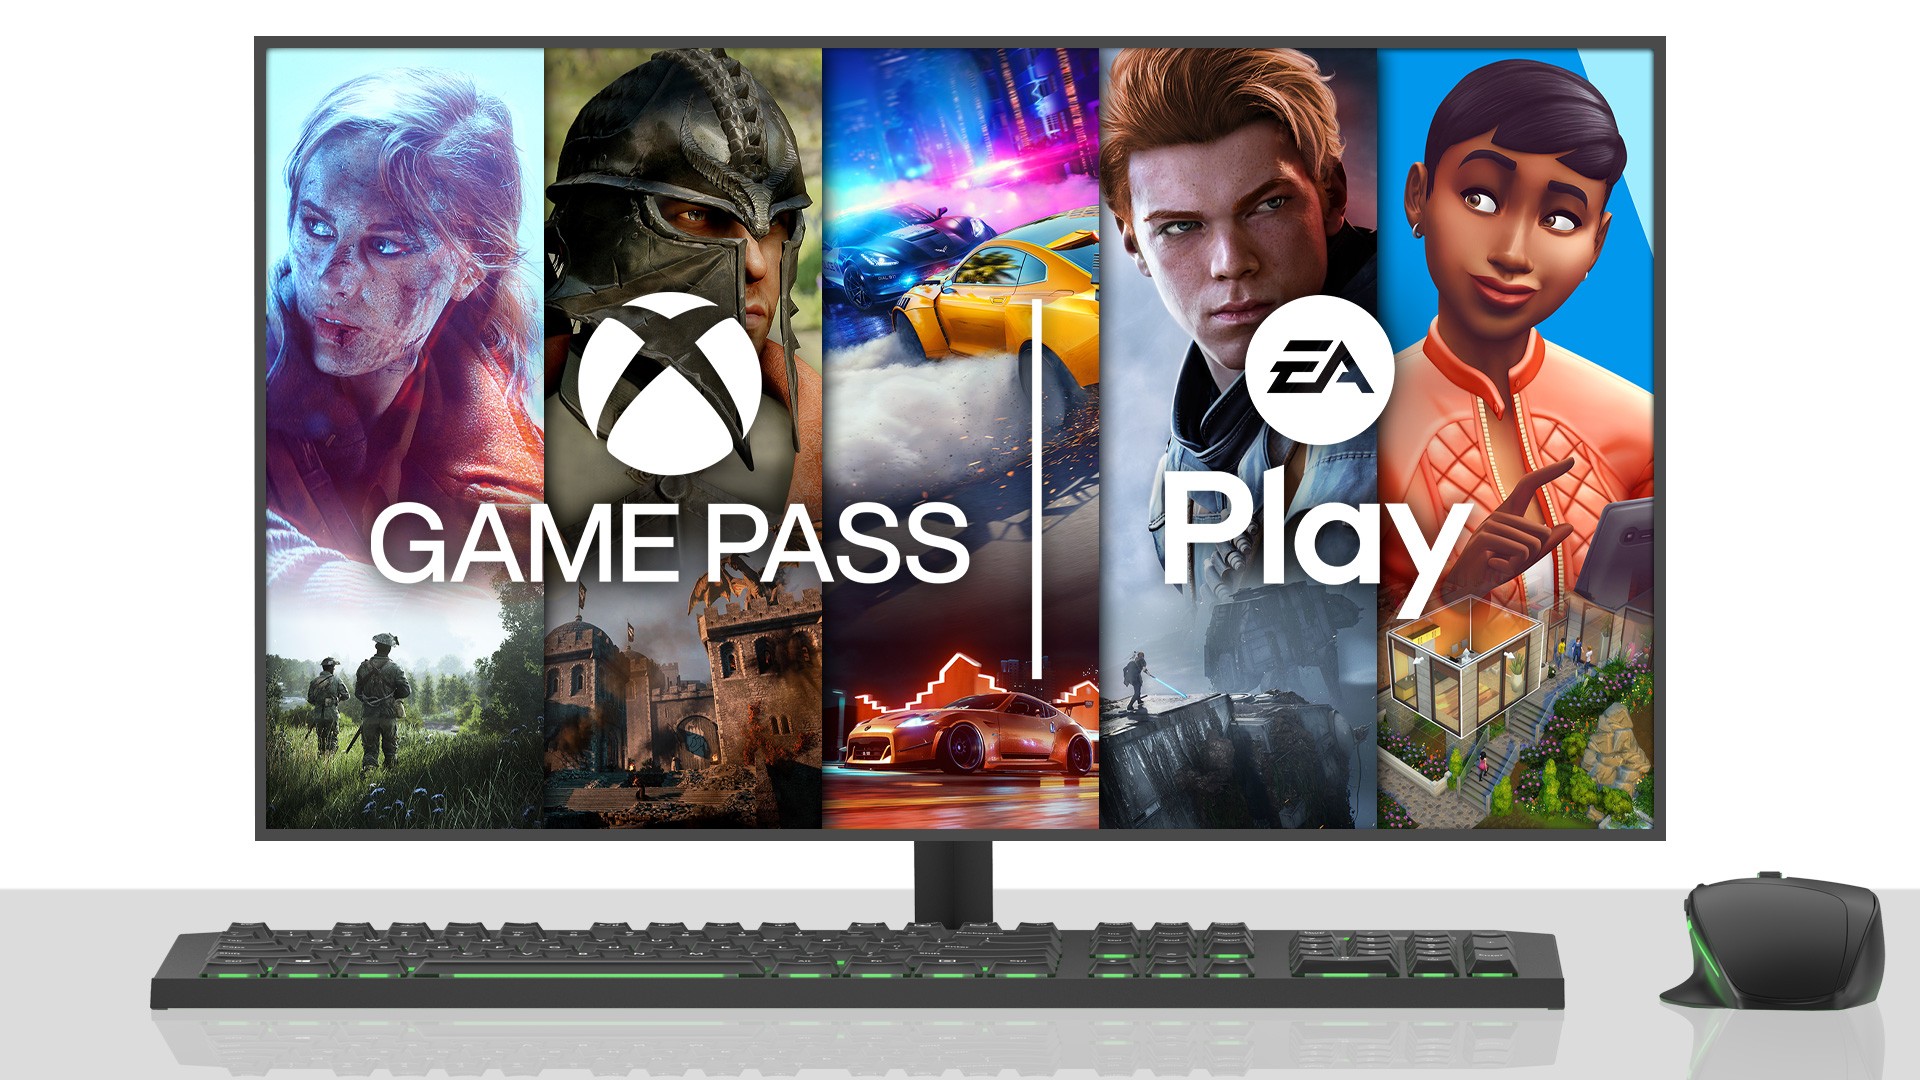 Логотипы EA Play и Xbox Game Pass на фоне игр на экране ПК